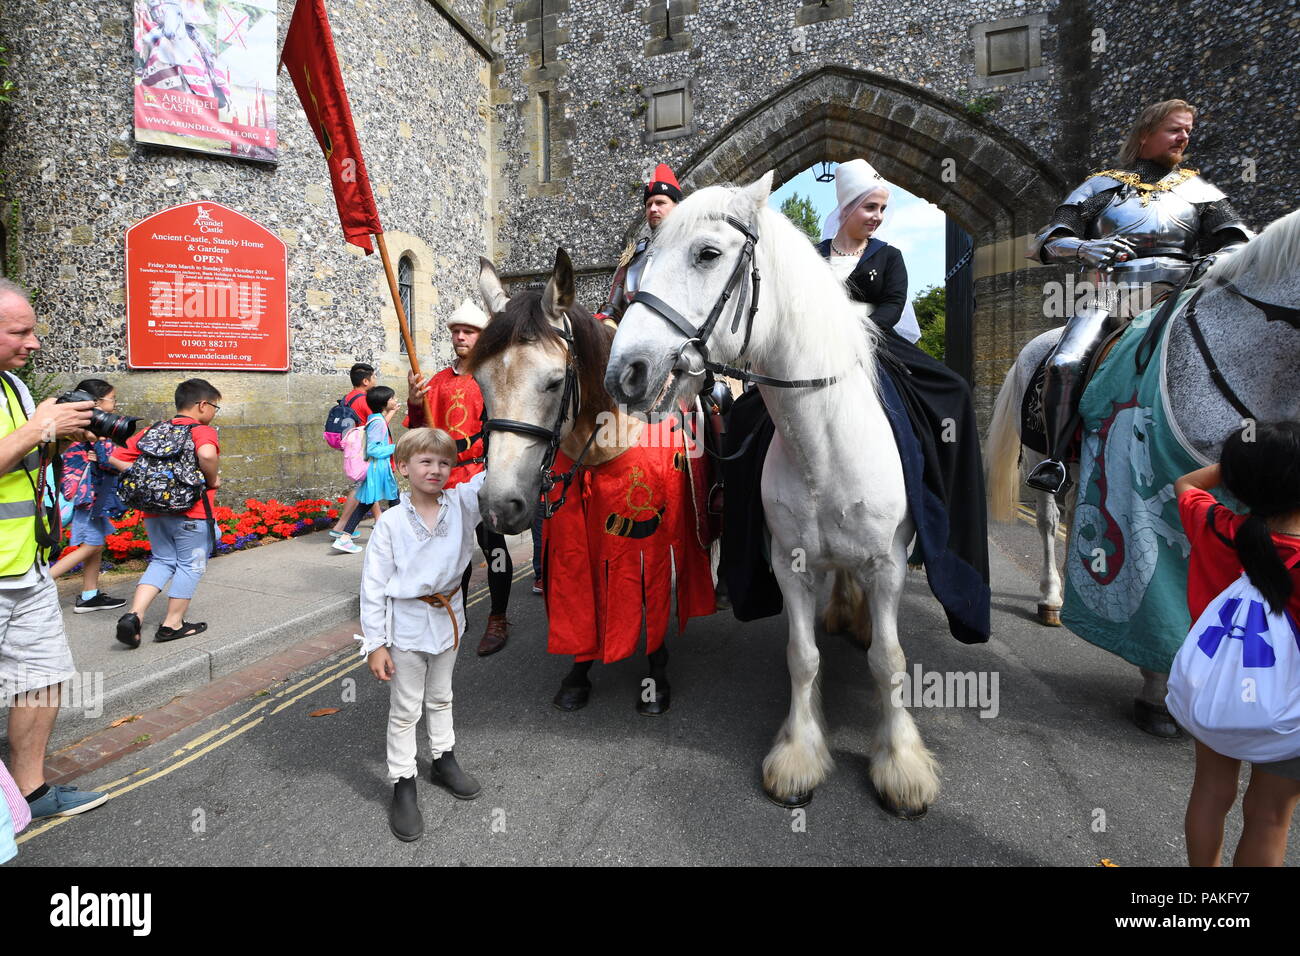 Menschen in Tracht mit Pferden vor dem Eingang zum Arundel Castle, am ersten Tag der Ritterturniere und Mittelalterliches Turnier Woche Turnier Woche (International) in Arundel, West Sussex, England, UK. Stockfoto